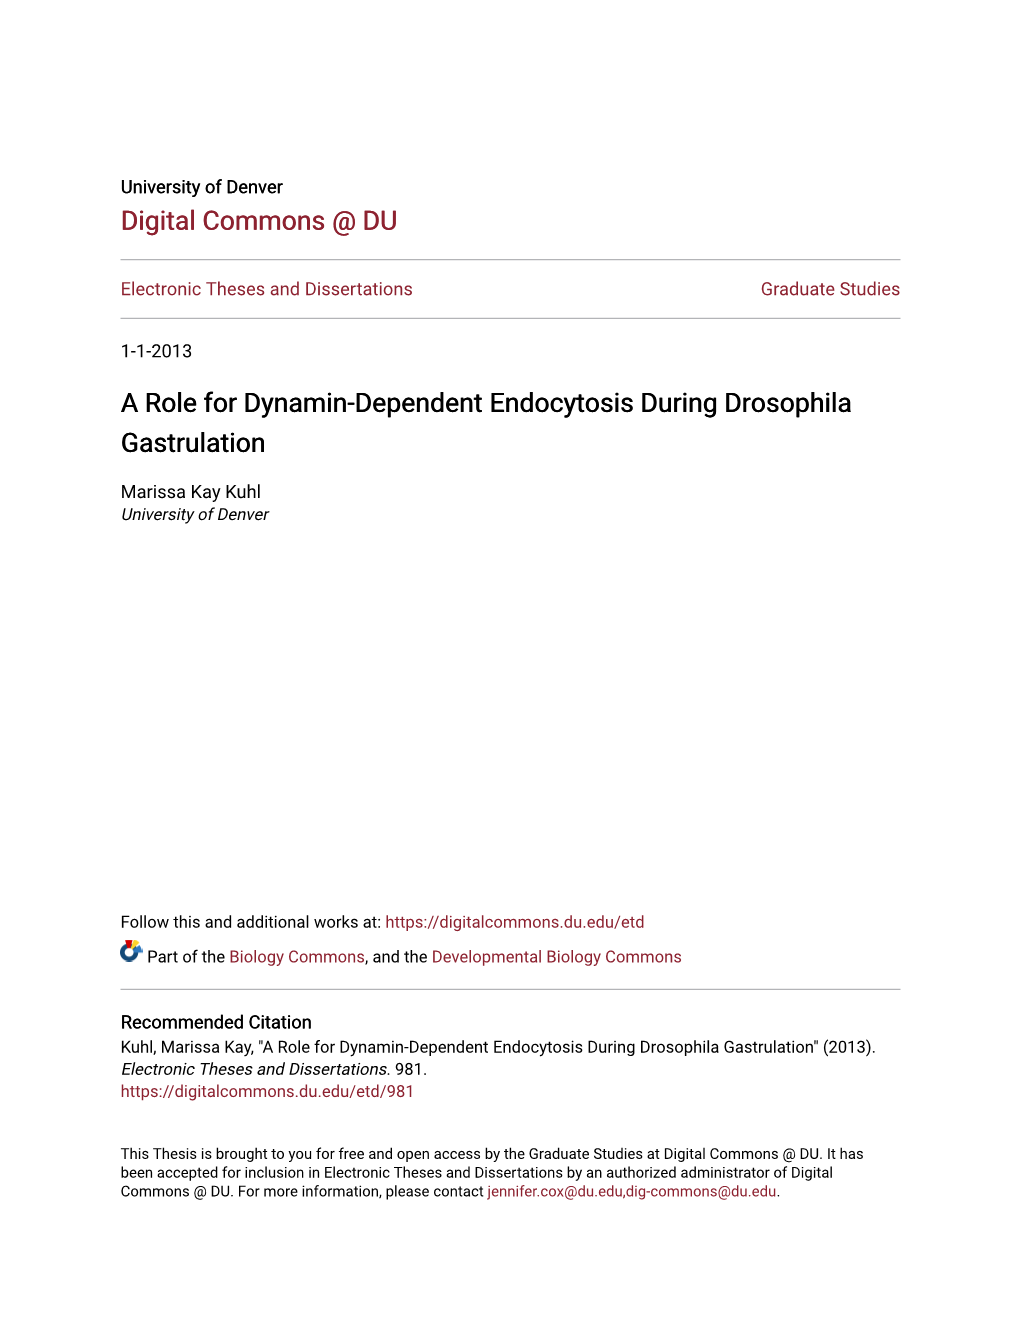 A Role for Dynamin-Dependent Endocytosis During Drosophila Gastrulation